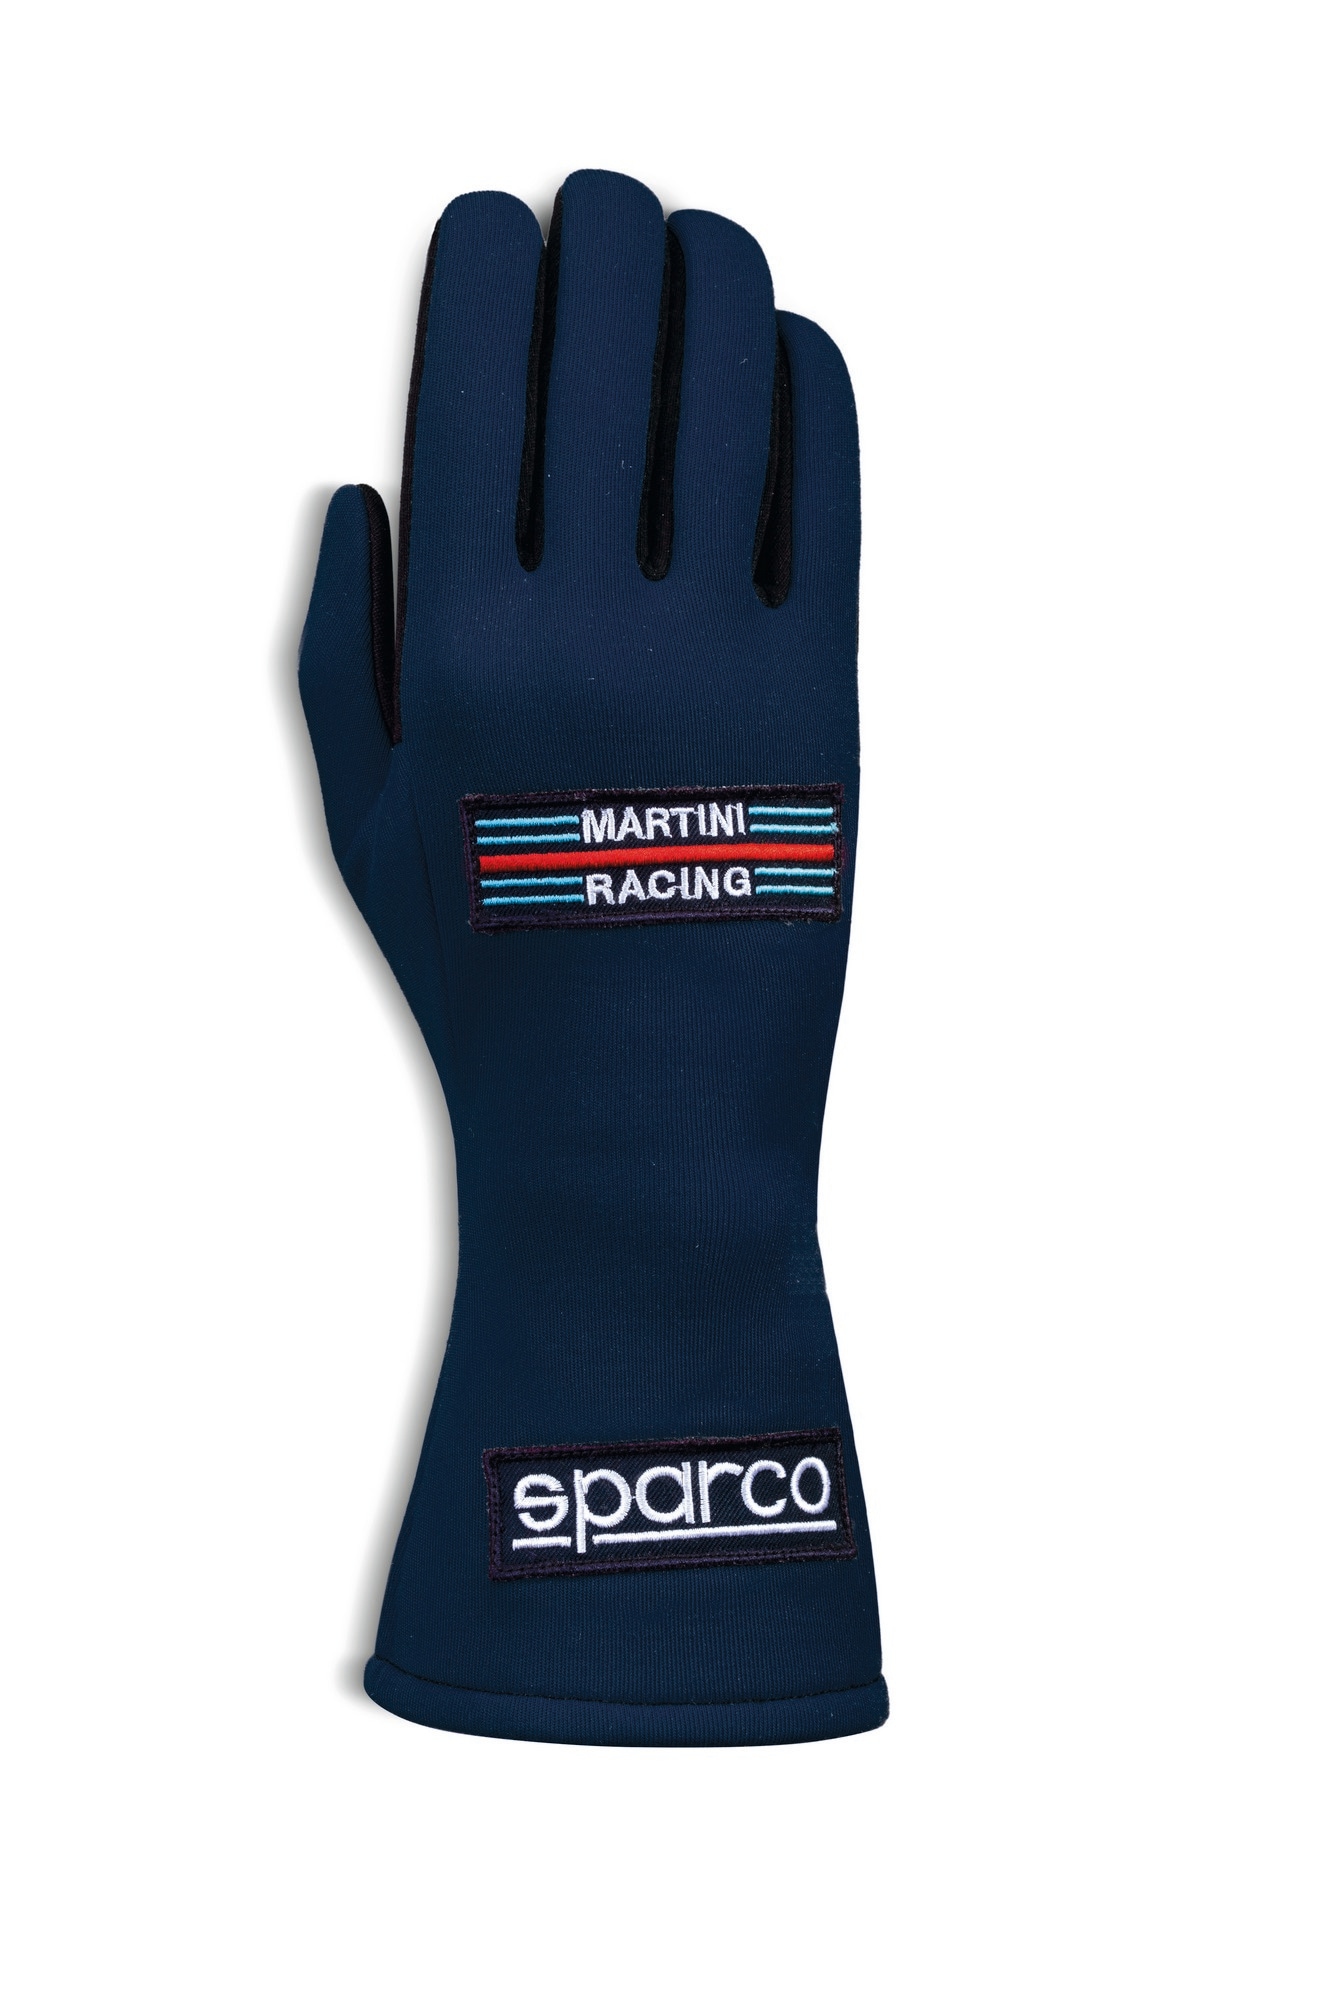 Handsker Sparco Martini Racing Blå - Radne